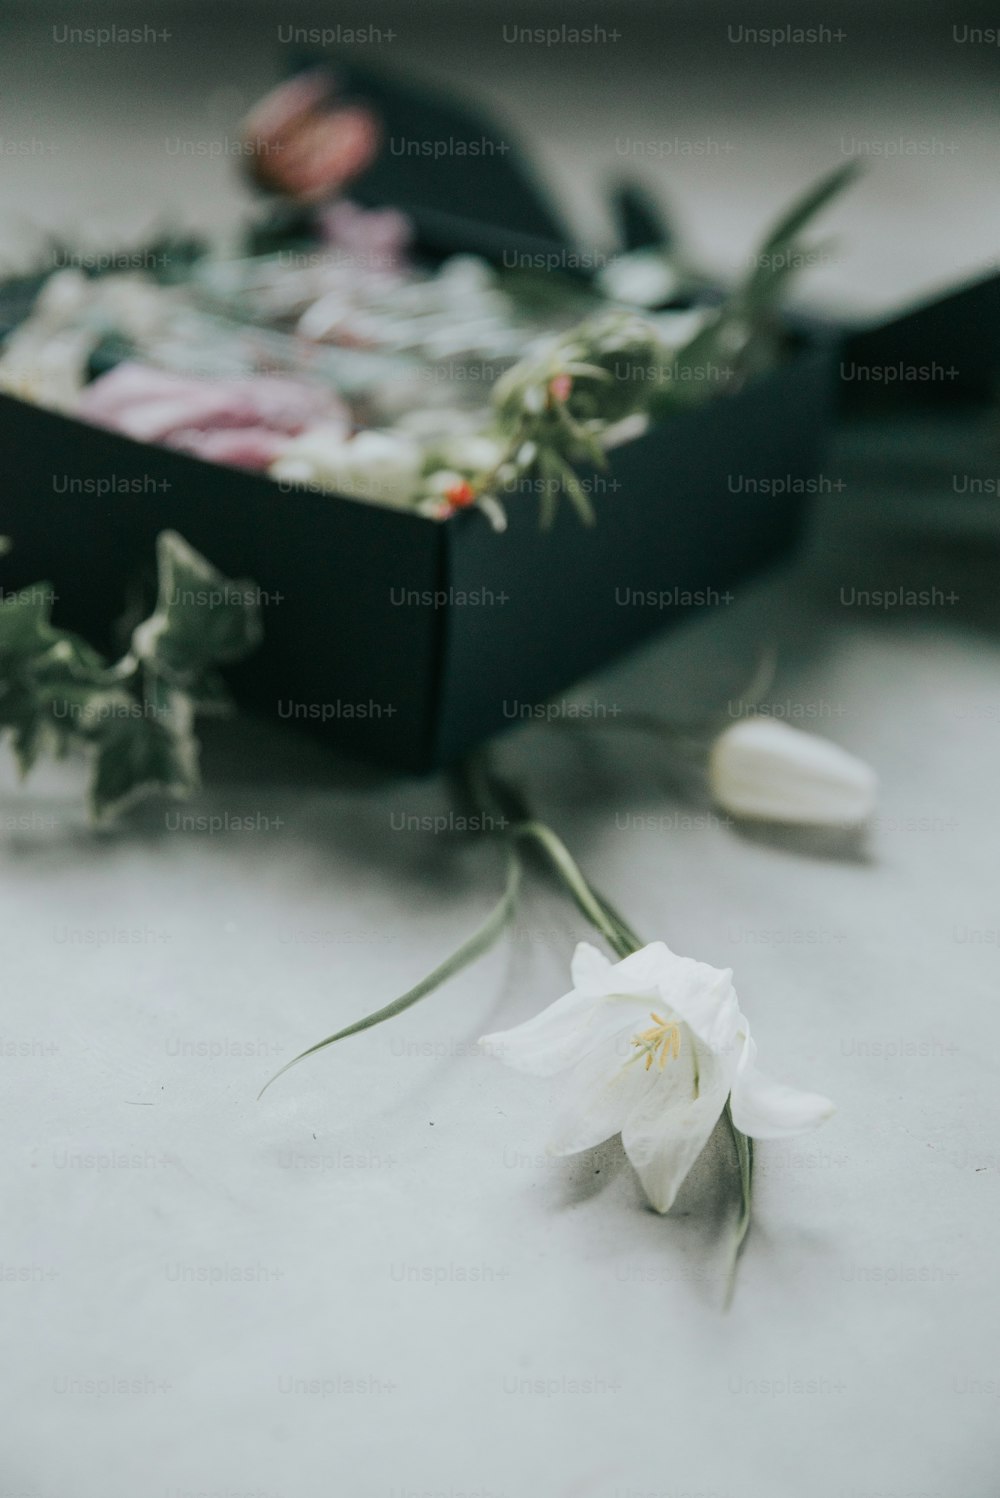 Una flor blanca tendida sobre una mesa junto a una caja negra